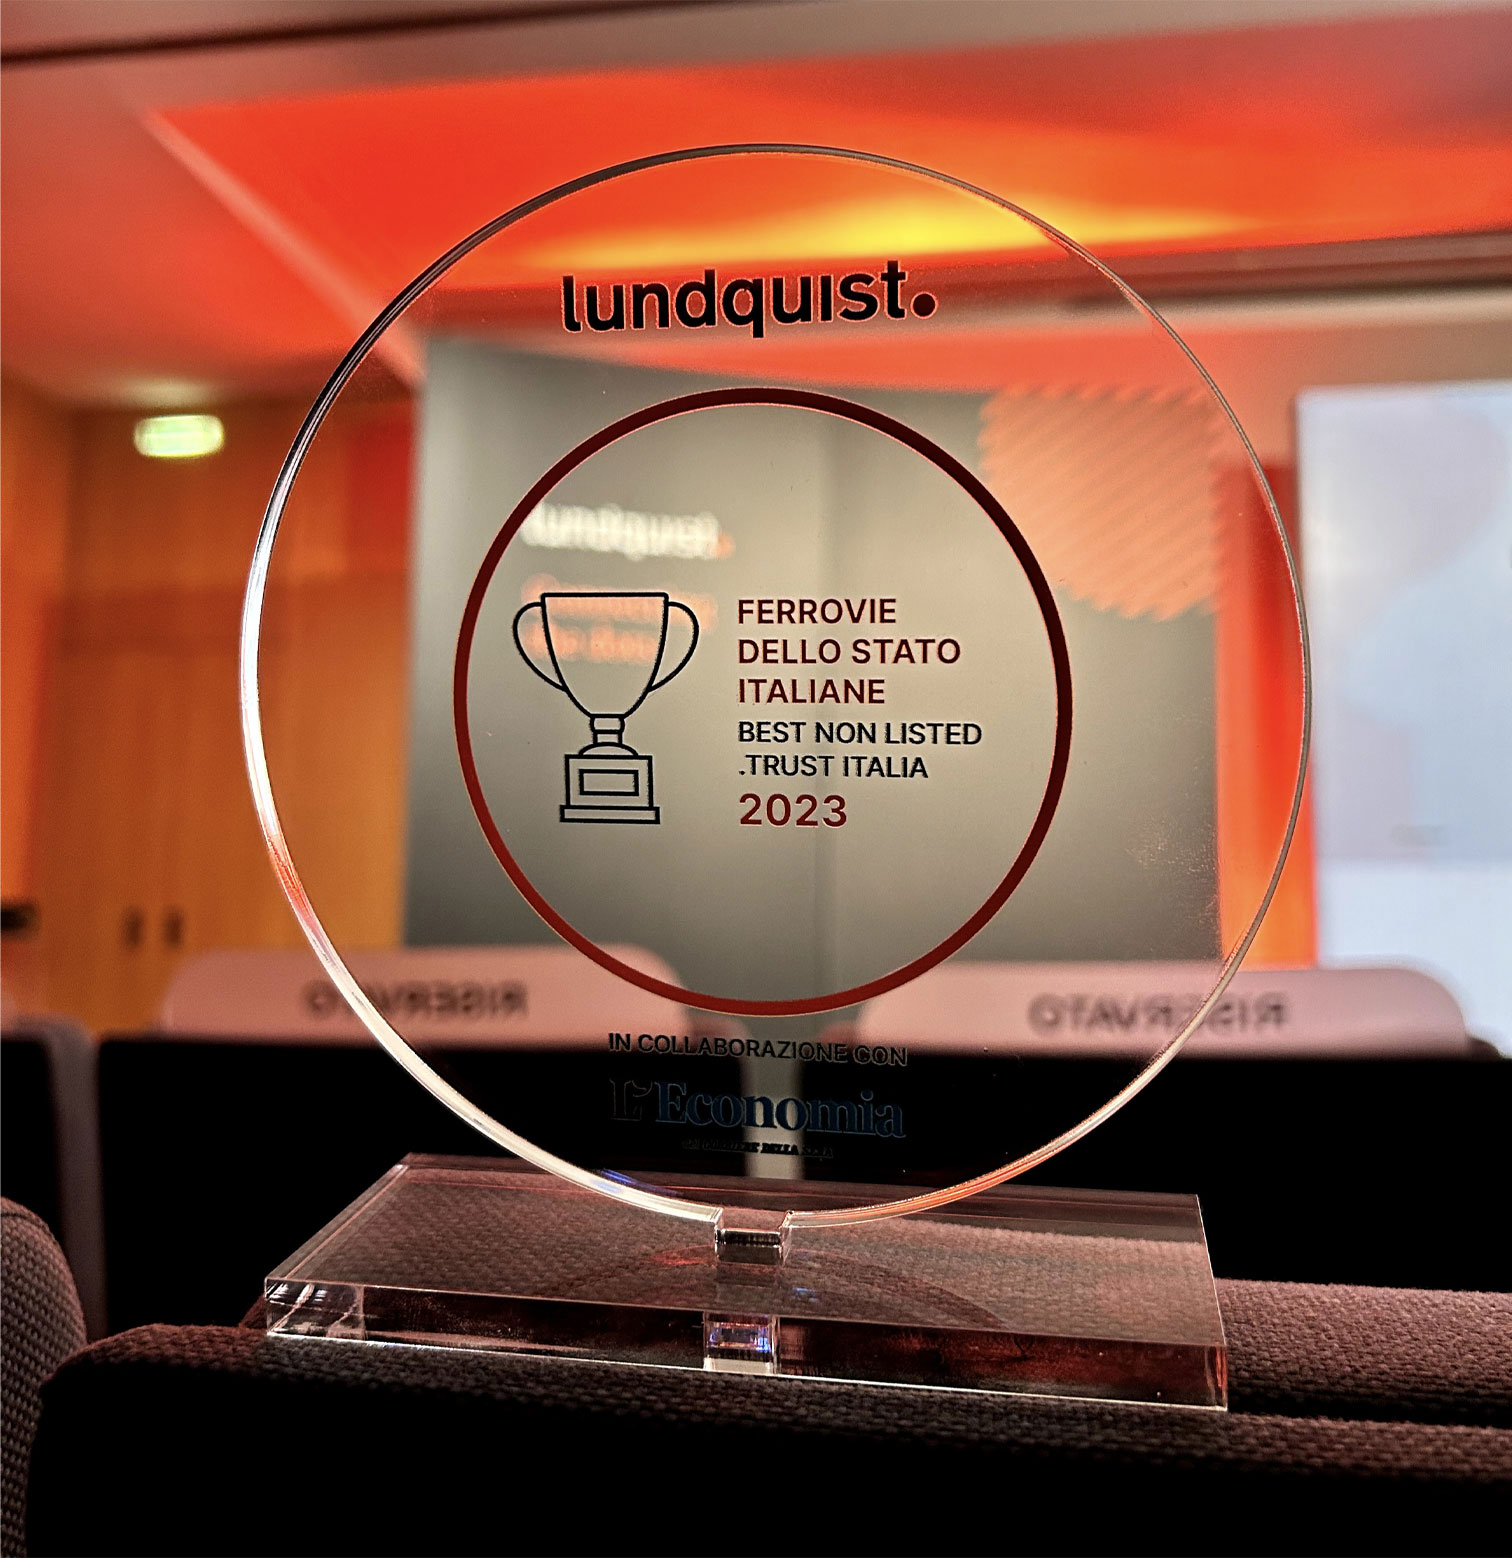  Il premio "Best non listed" della ricerca .trust di Lundquist